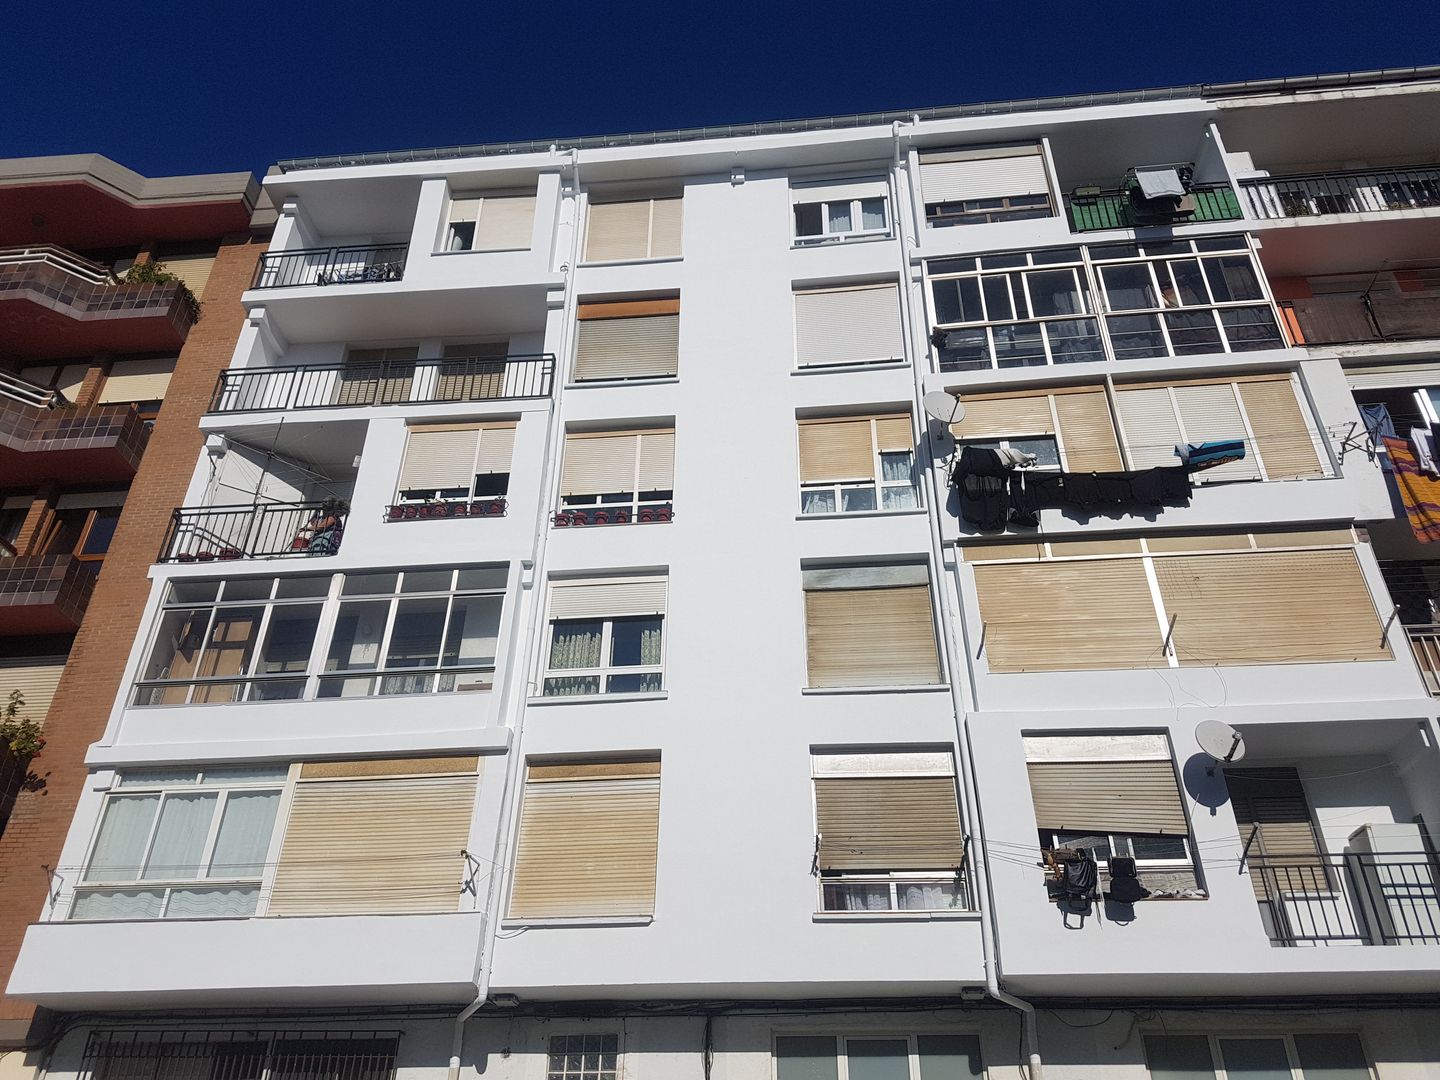 Reparación del hormigón deteriorado en la fachada de un edificio en Santander, MAU CONSTRUCCIONES Y REFORMAS EN CANTABRIA MAU CONSTRUCCIONES Y REFORMAS EN CANTABRIA Casas multifamiliares